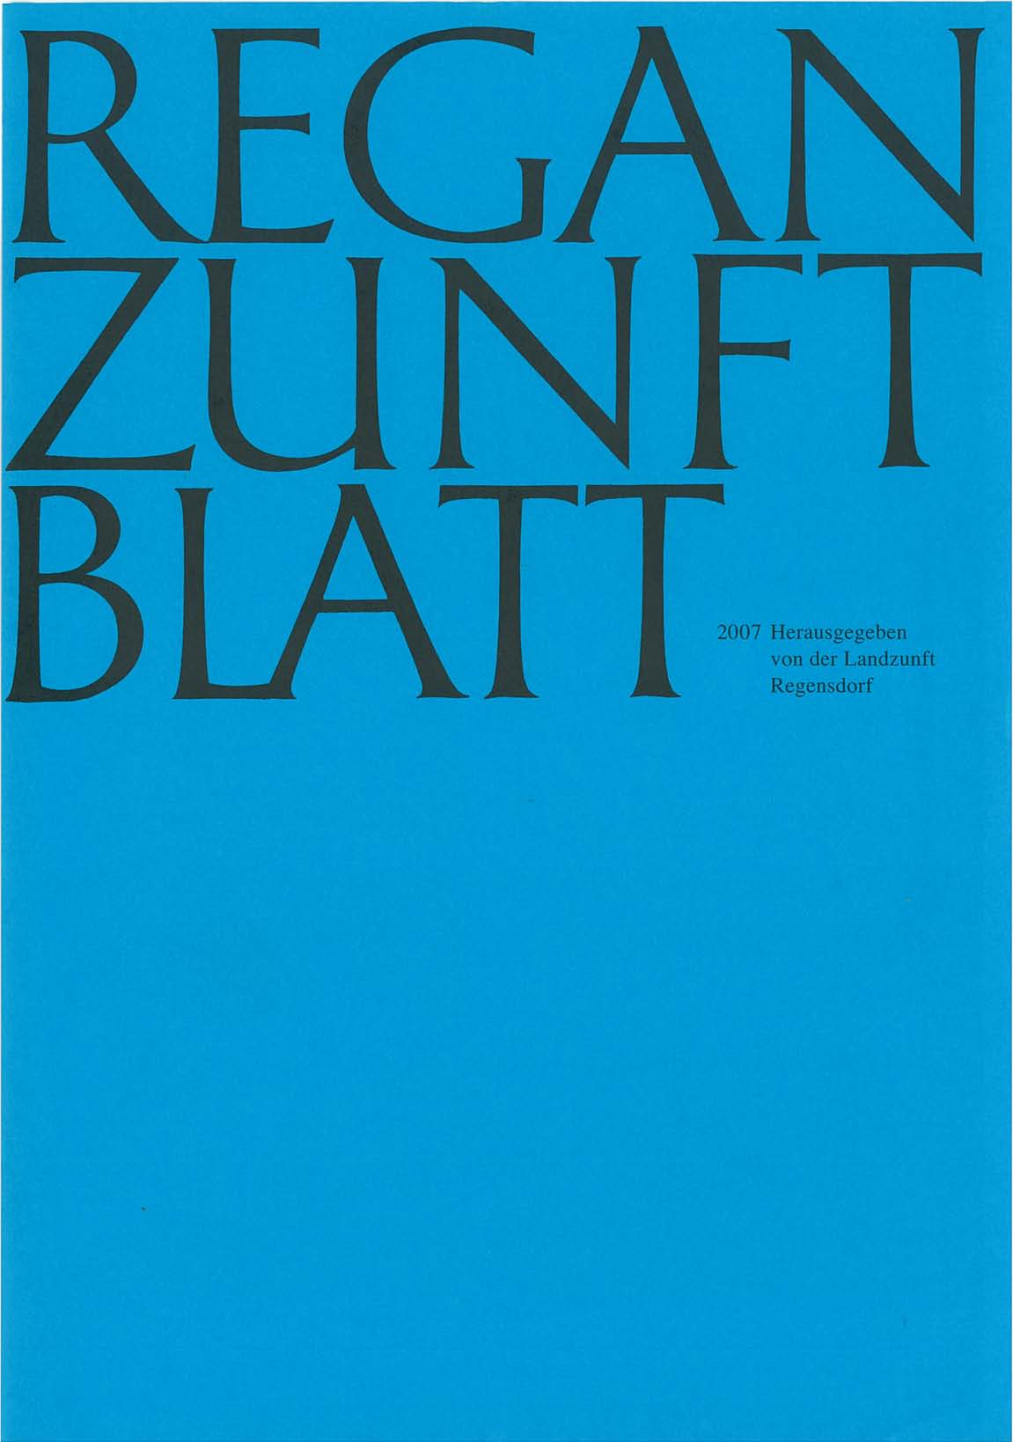 2007 Herausgegeben Von Der Landzunft Regensdorf ~‚Ozcib 3‘ 1~“ Regan-Zunftblatt 2007